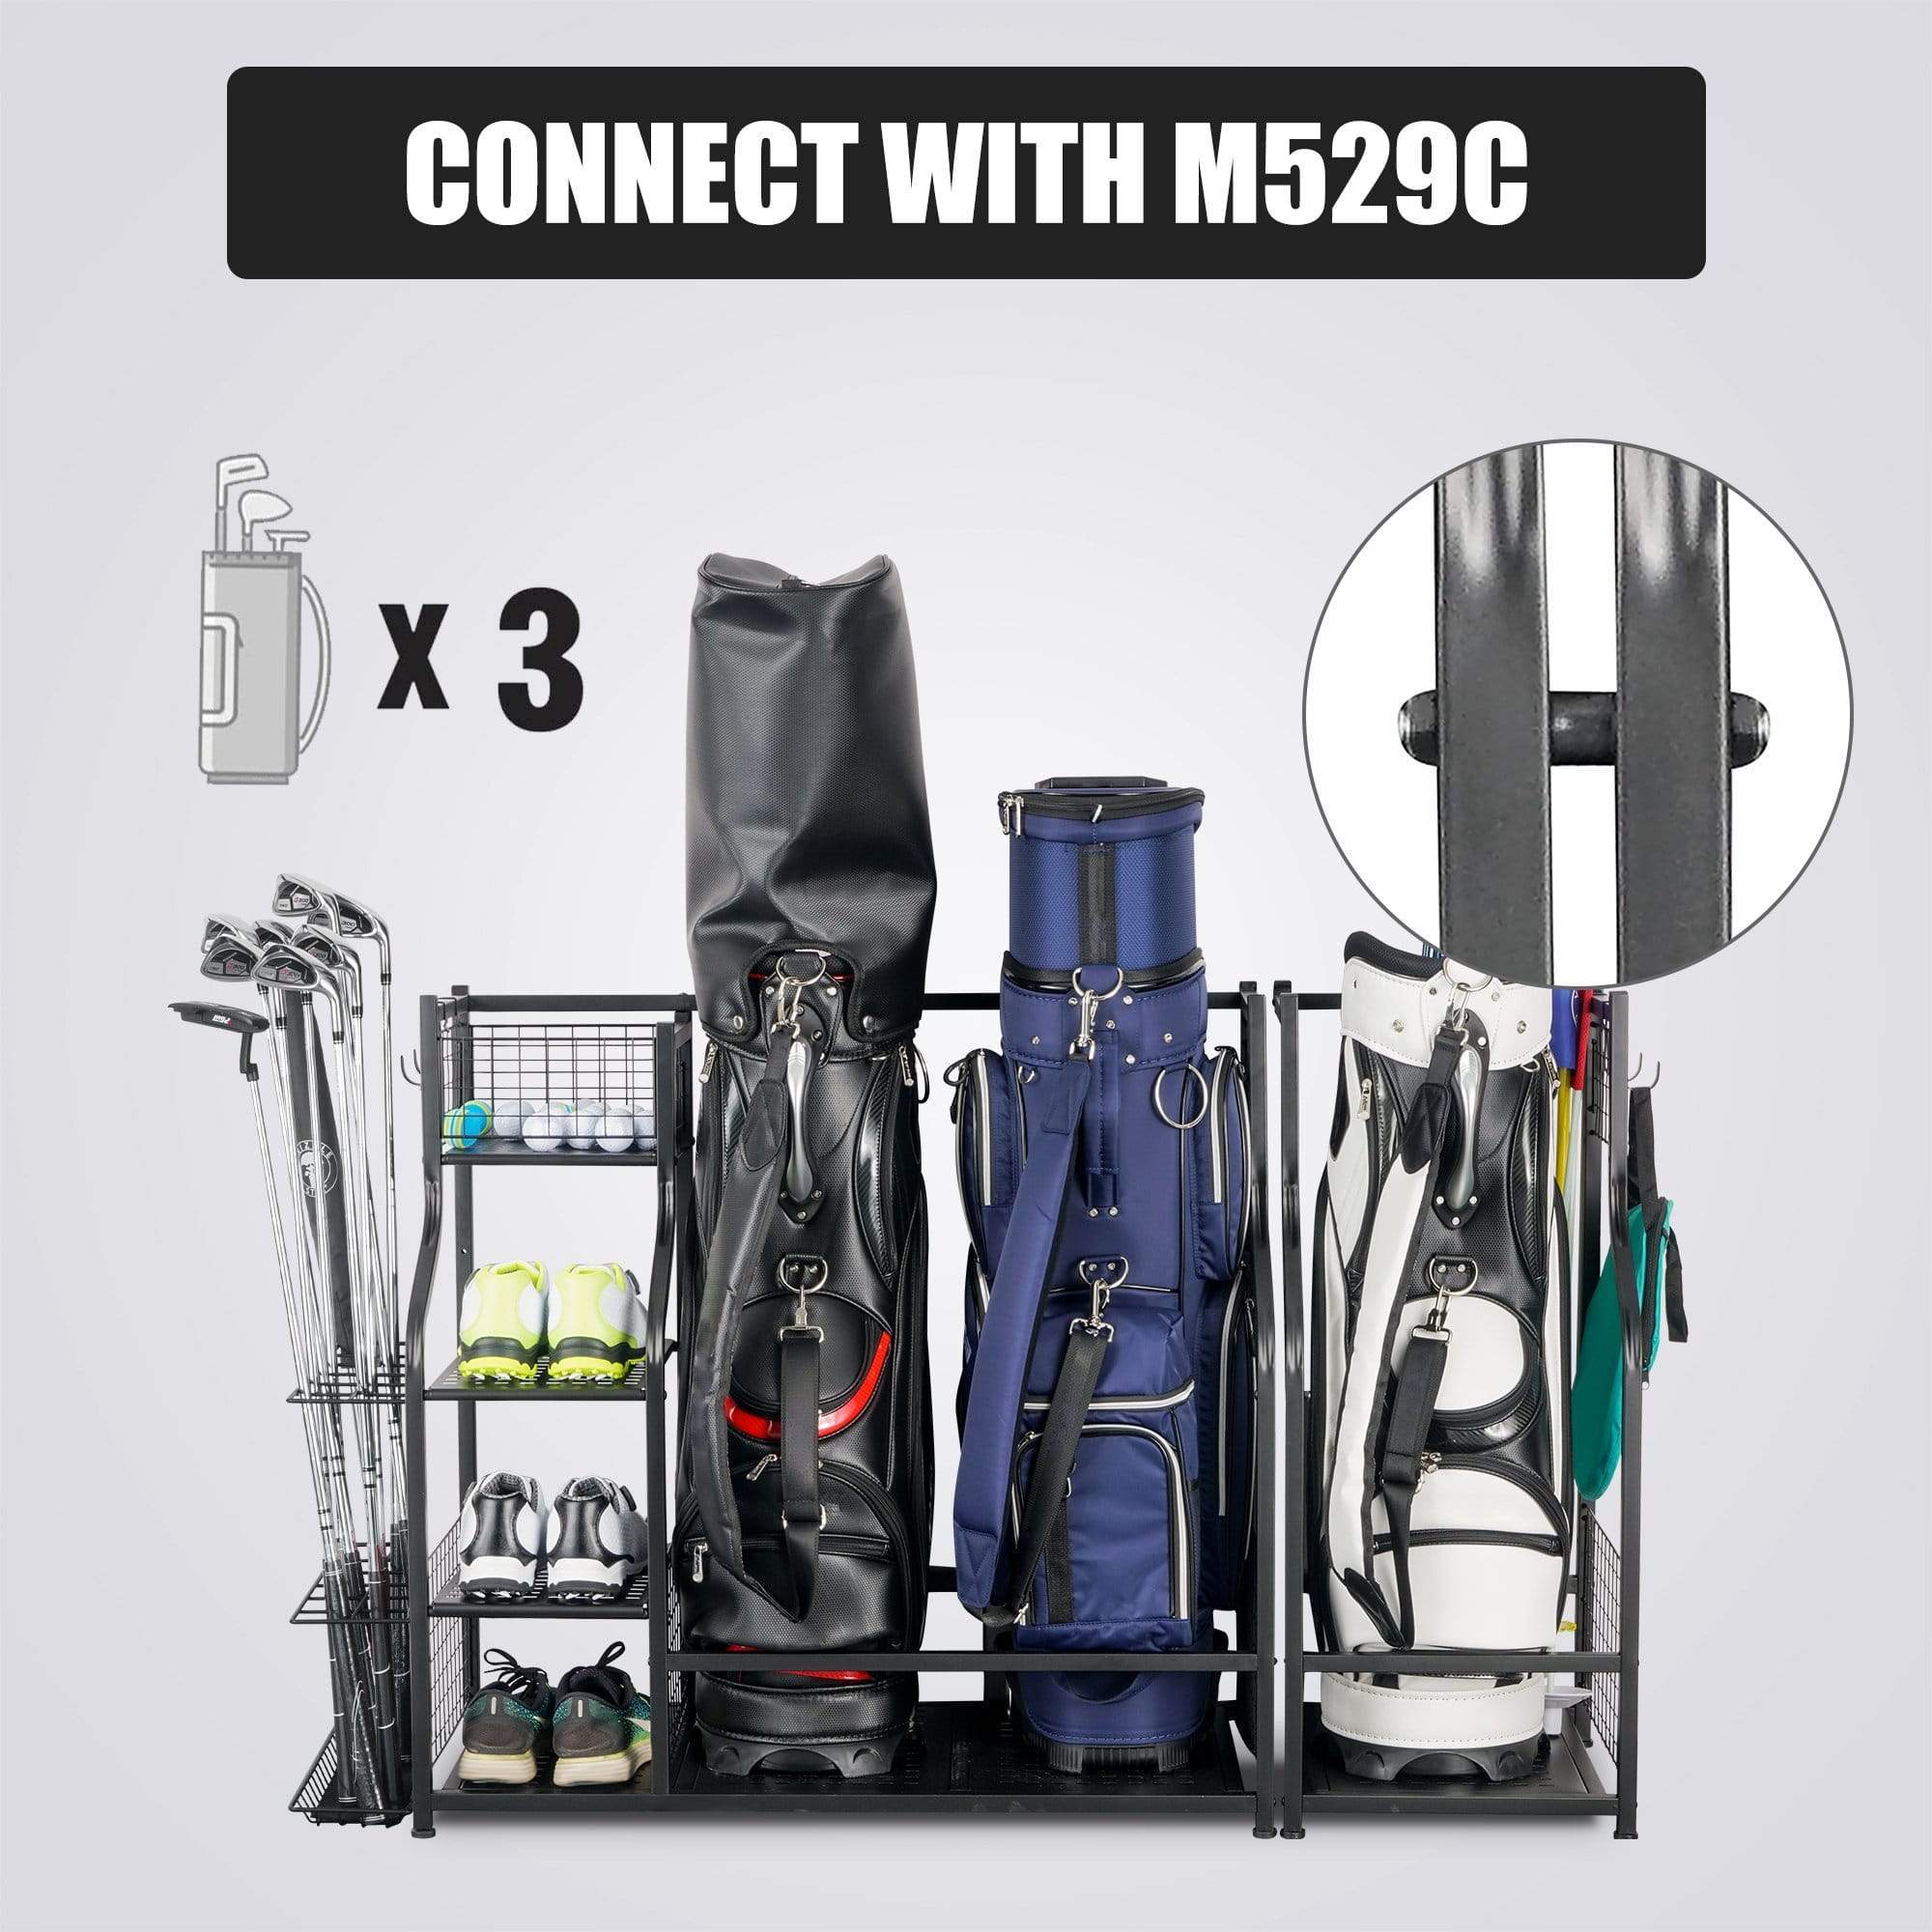 Mythinglogic 3 Bag Golf Organizer, golf organizer for garage, Heavy Duty Golf Rack, With Lockable Wheels